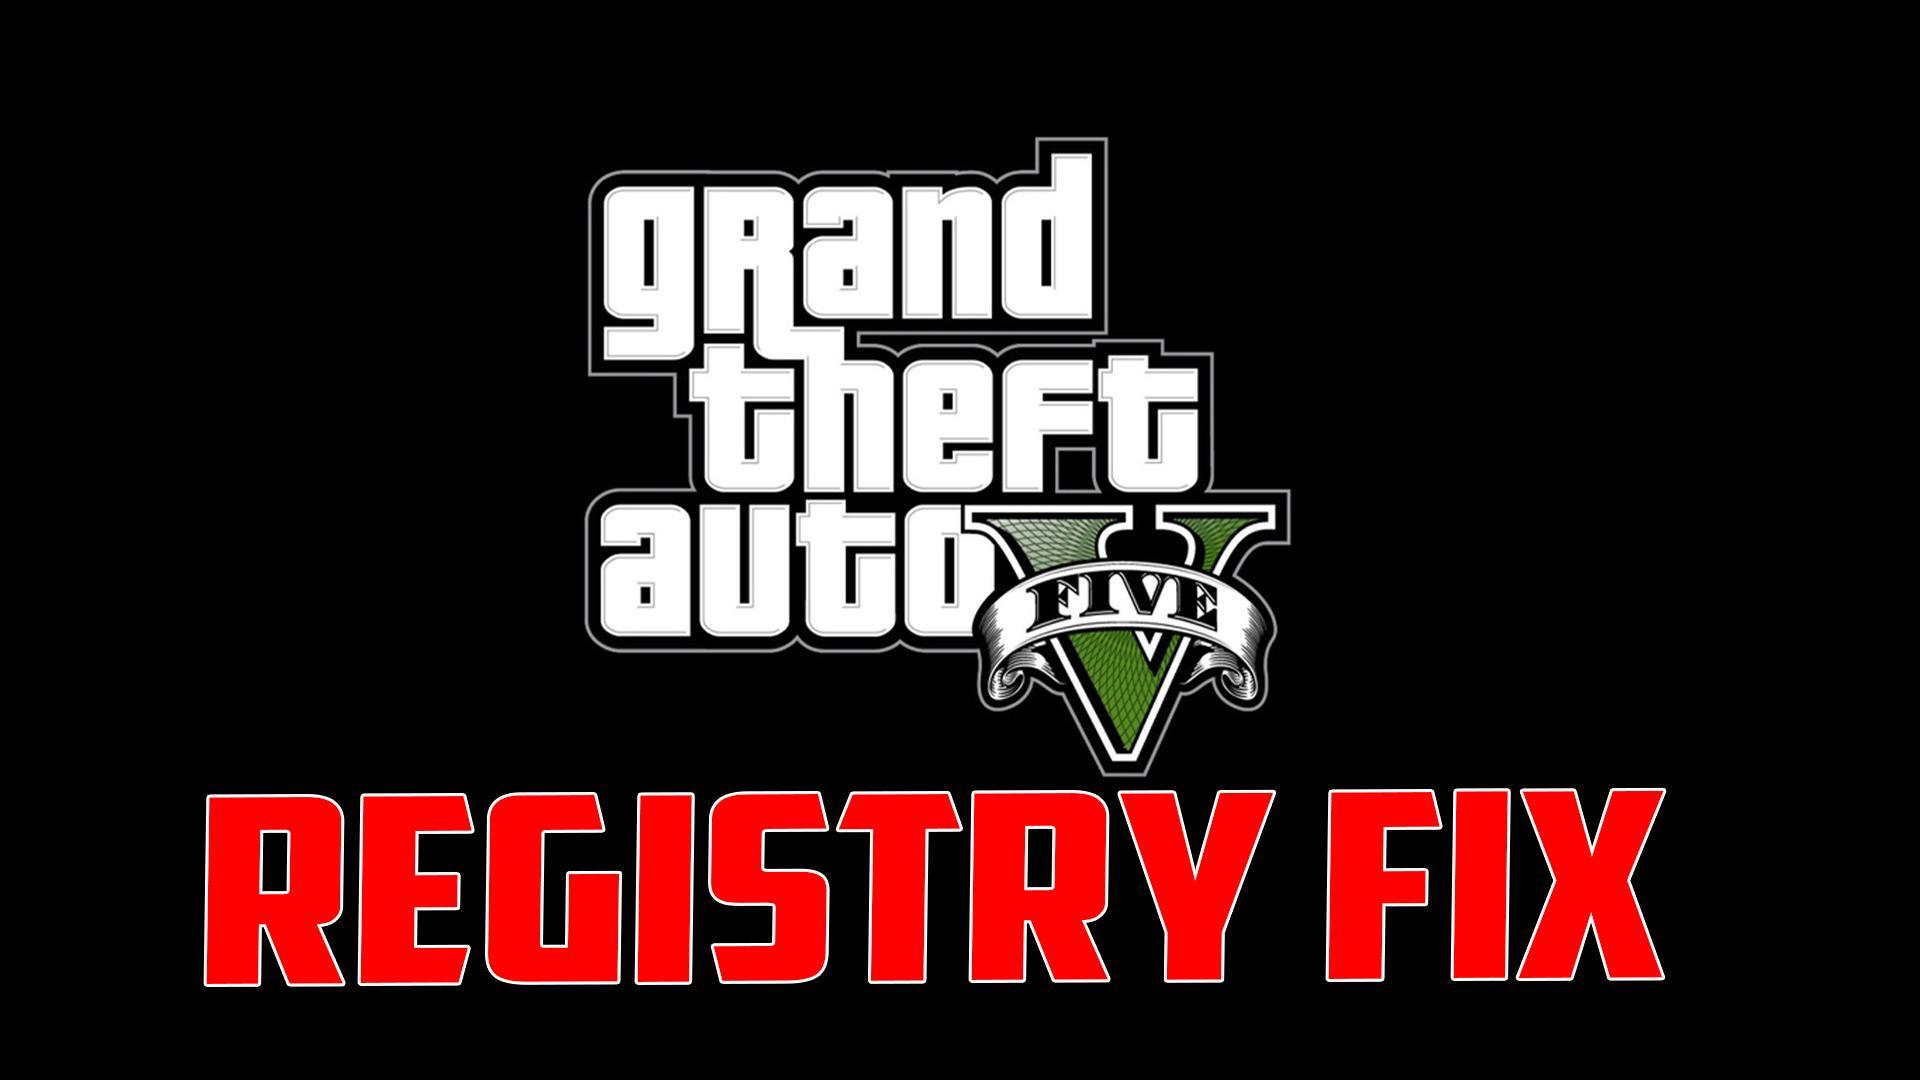 Grand Theft Auto V Registry Fix